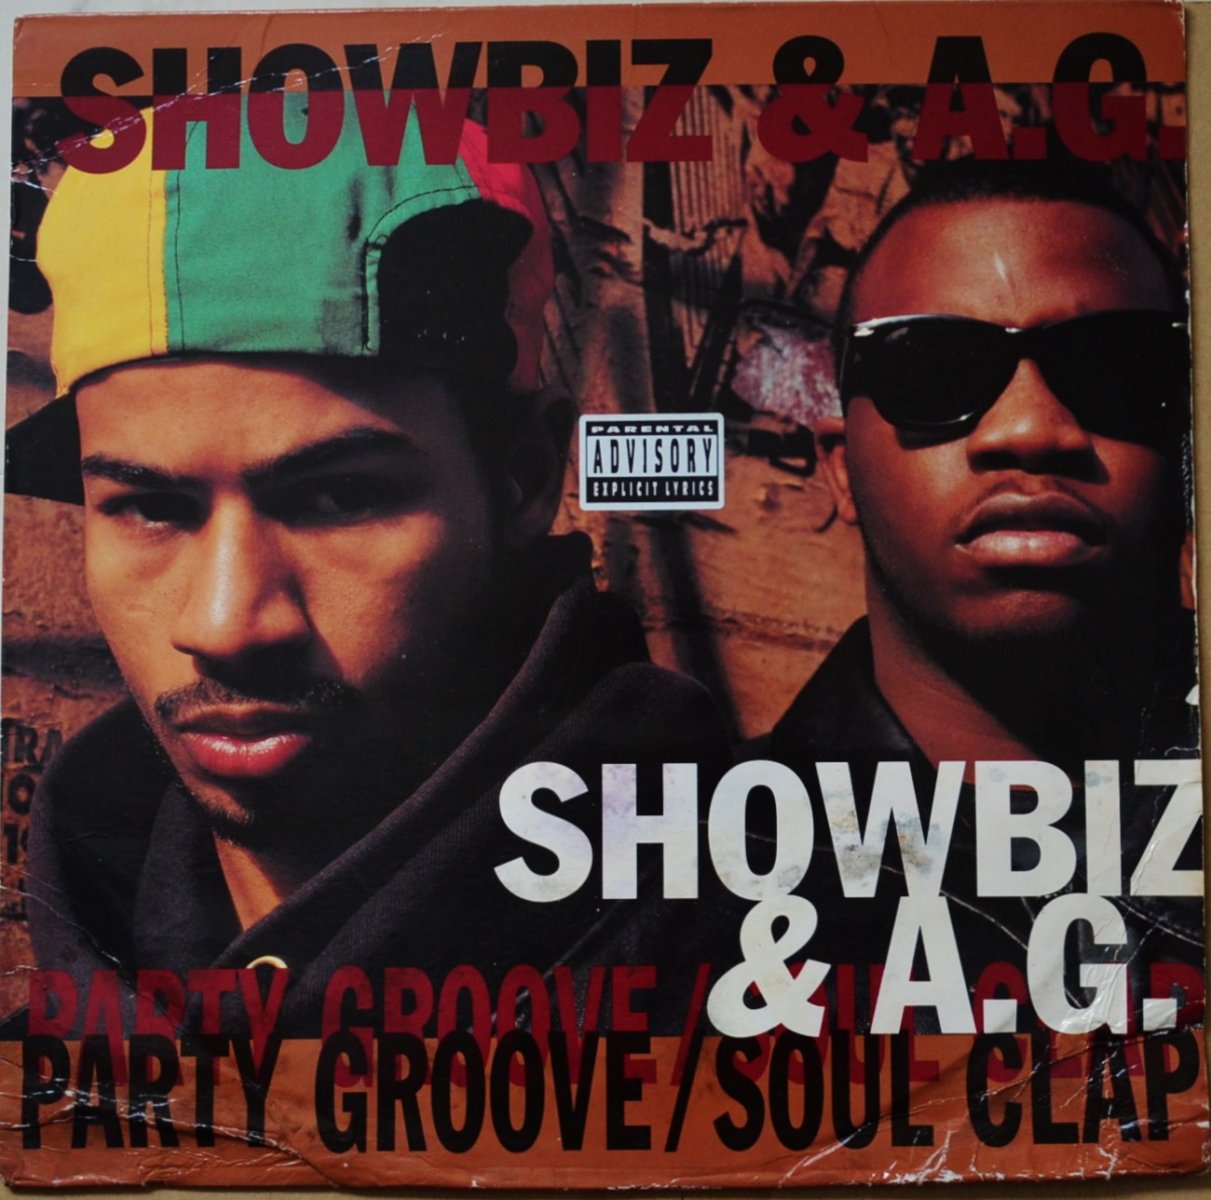 Showbiz & A.G.-Soul Clap / Party Groove